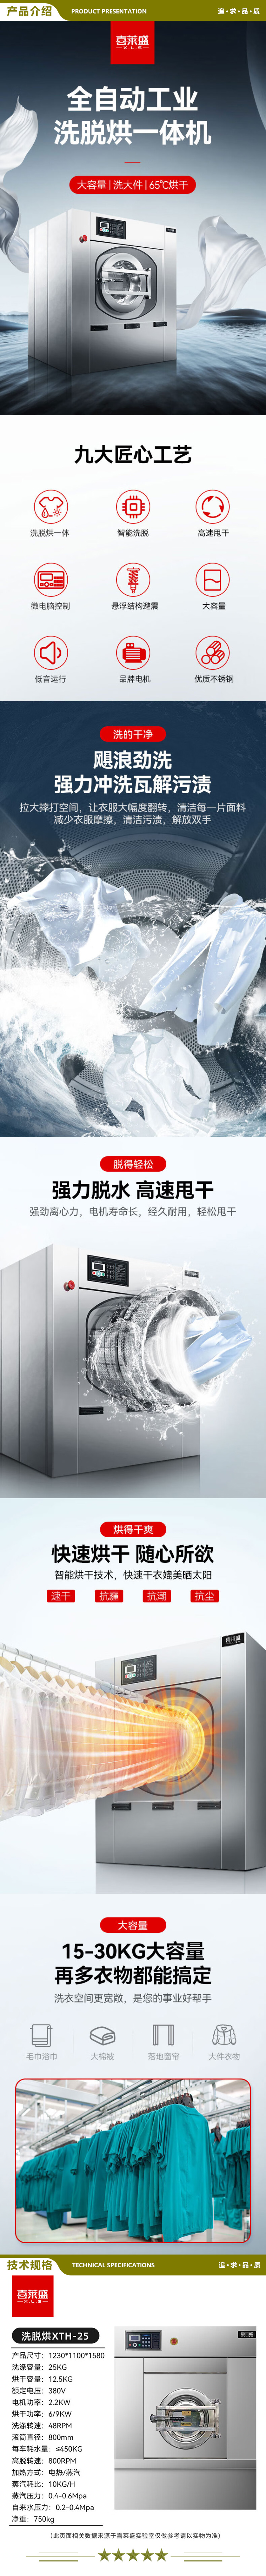 喜莱盛 XTH-25 商用洗脱烘一体机大型工业洗衣机烘干机 酒店宾馆床单全自动干衣机25公斤级  2.jpg